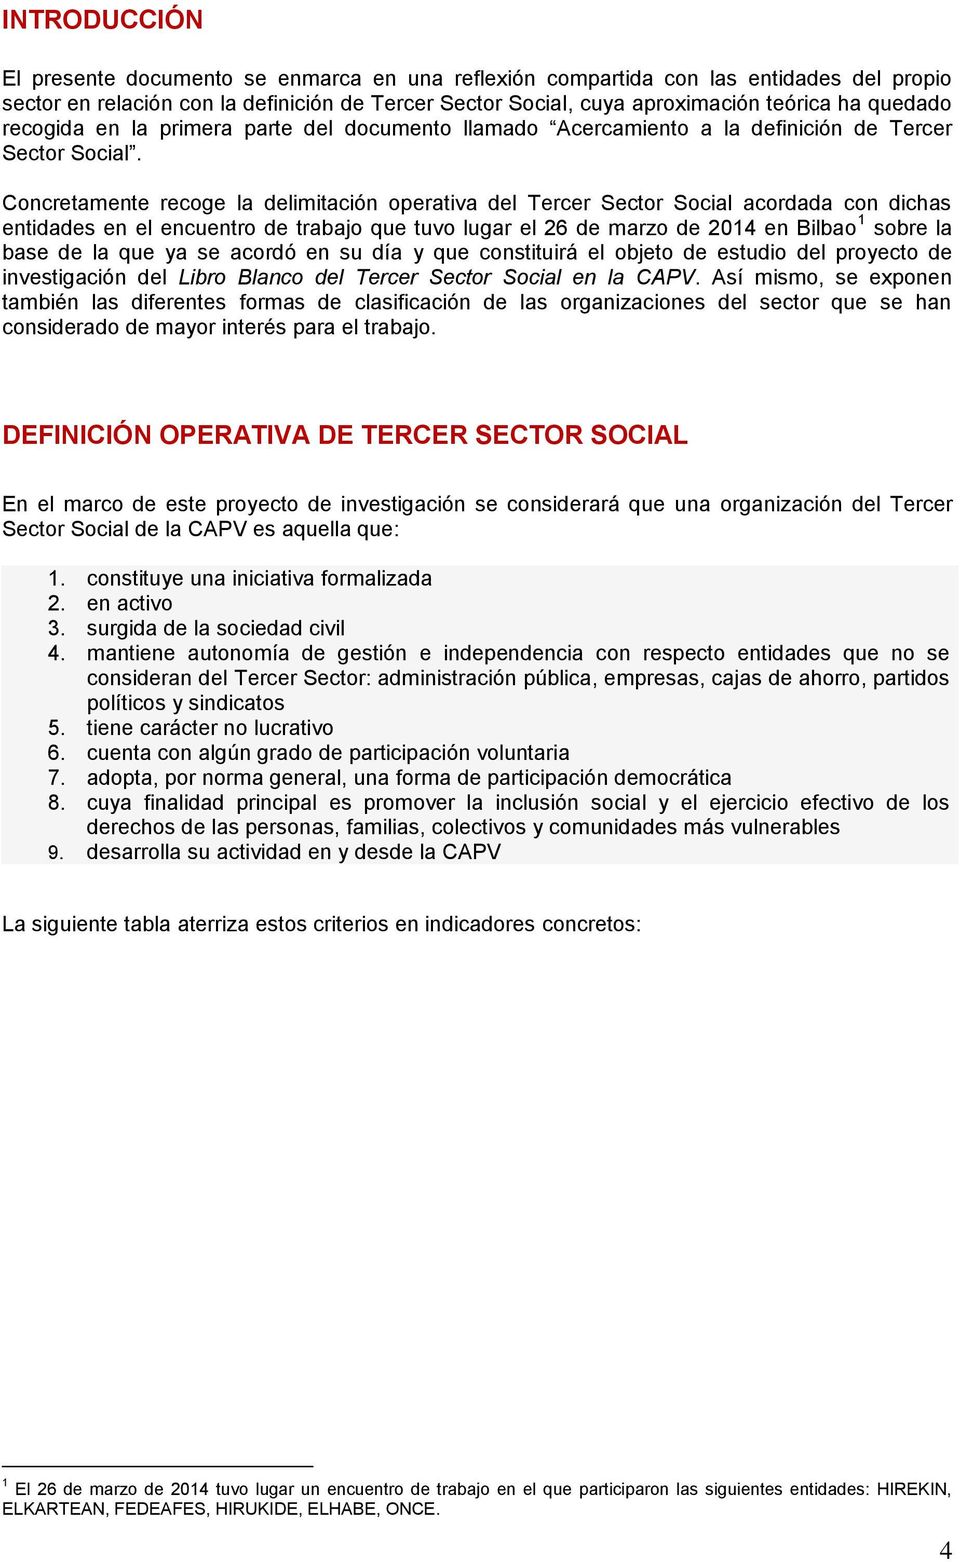 Concretamente recoge la delimitación operativa del Tercer Sector Social acordada con dichas entidades en el encuentro de trabajo que tuvo lugar el 26 de marzo de 2014 en Bilbao 1 sobre la base de la